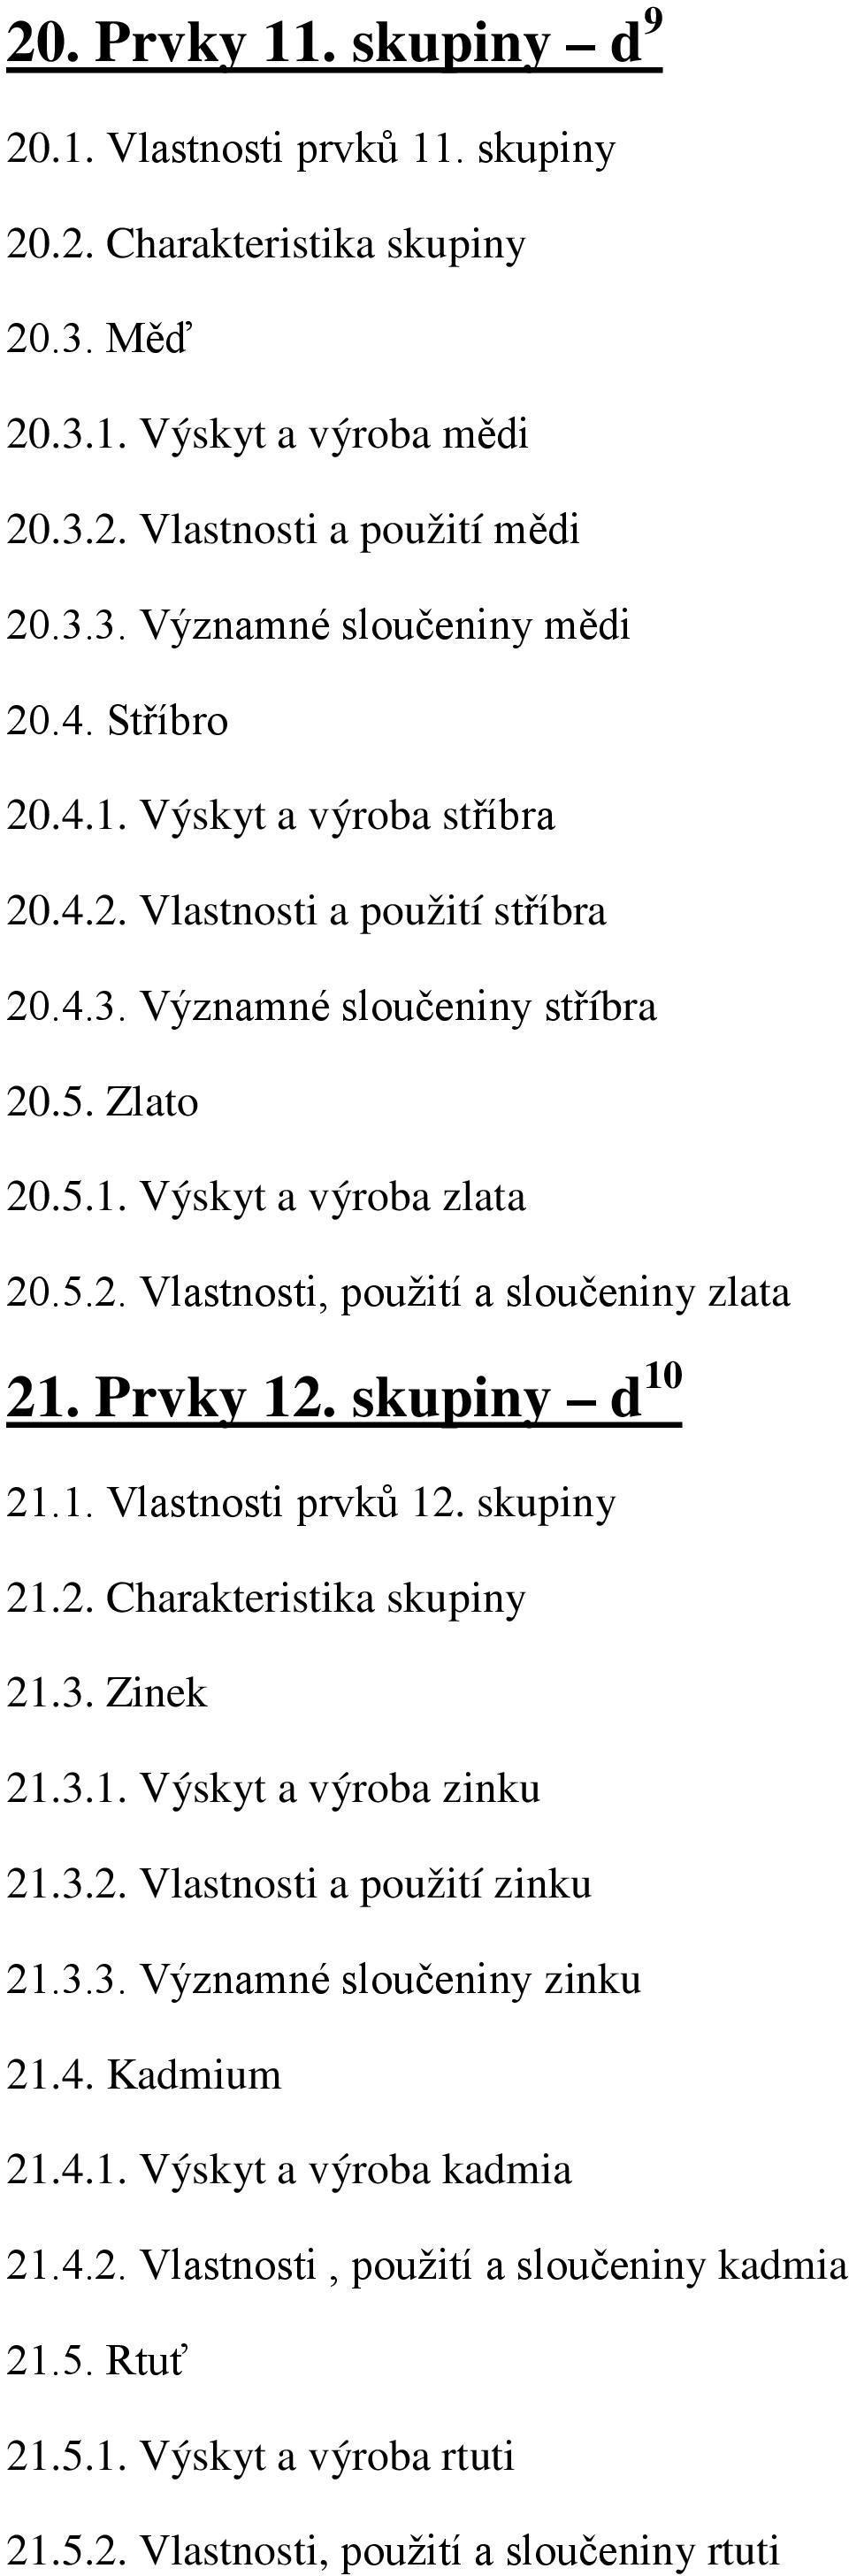 Prvky 12. skupiny d 10 21.1. Vlastnosti prvků 12. skupiny 21.2. Charakteristika skupiny 21.3. Zinek 21.3.1. Výskyt a výroba zinku 21.3.2. Vlastnosti a použití zinku 21.3.3. Významné sloučeniny zinku 21.